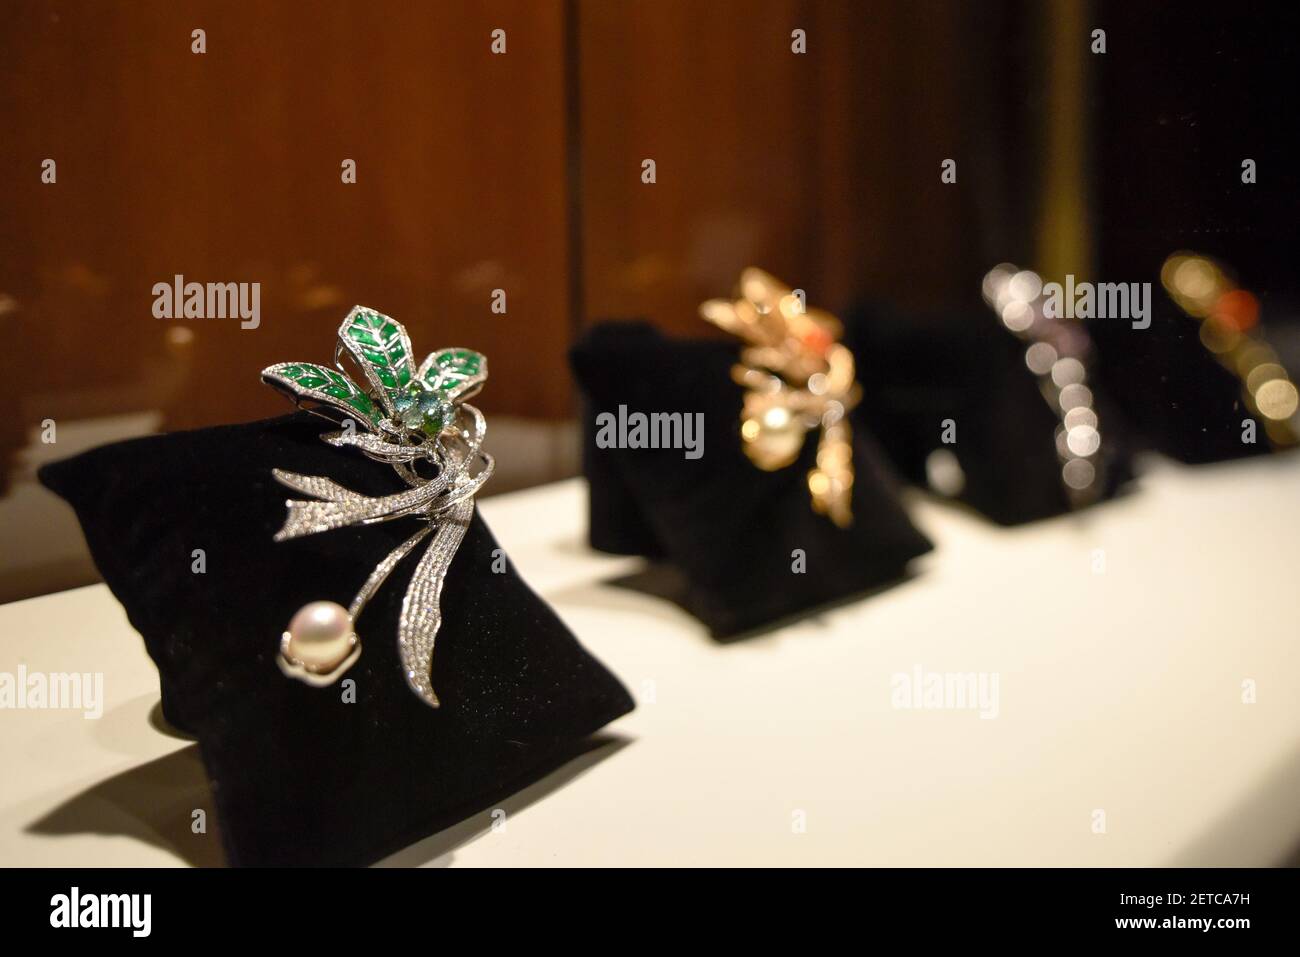 170120) -- PARÍS, 20 de enero de 2017 (Xinhua) -- Foto tomada el 19 de  enero de 2017 muestra una pieza de la joyería de Maxim en París, Francia.  El diseñador de